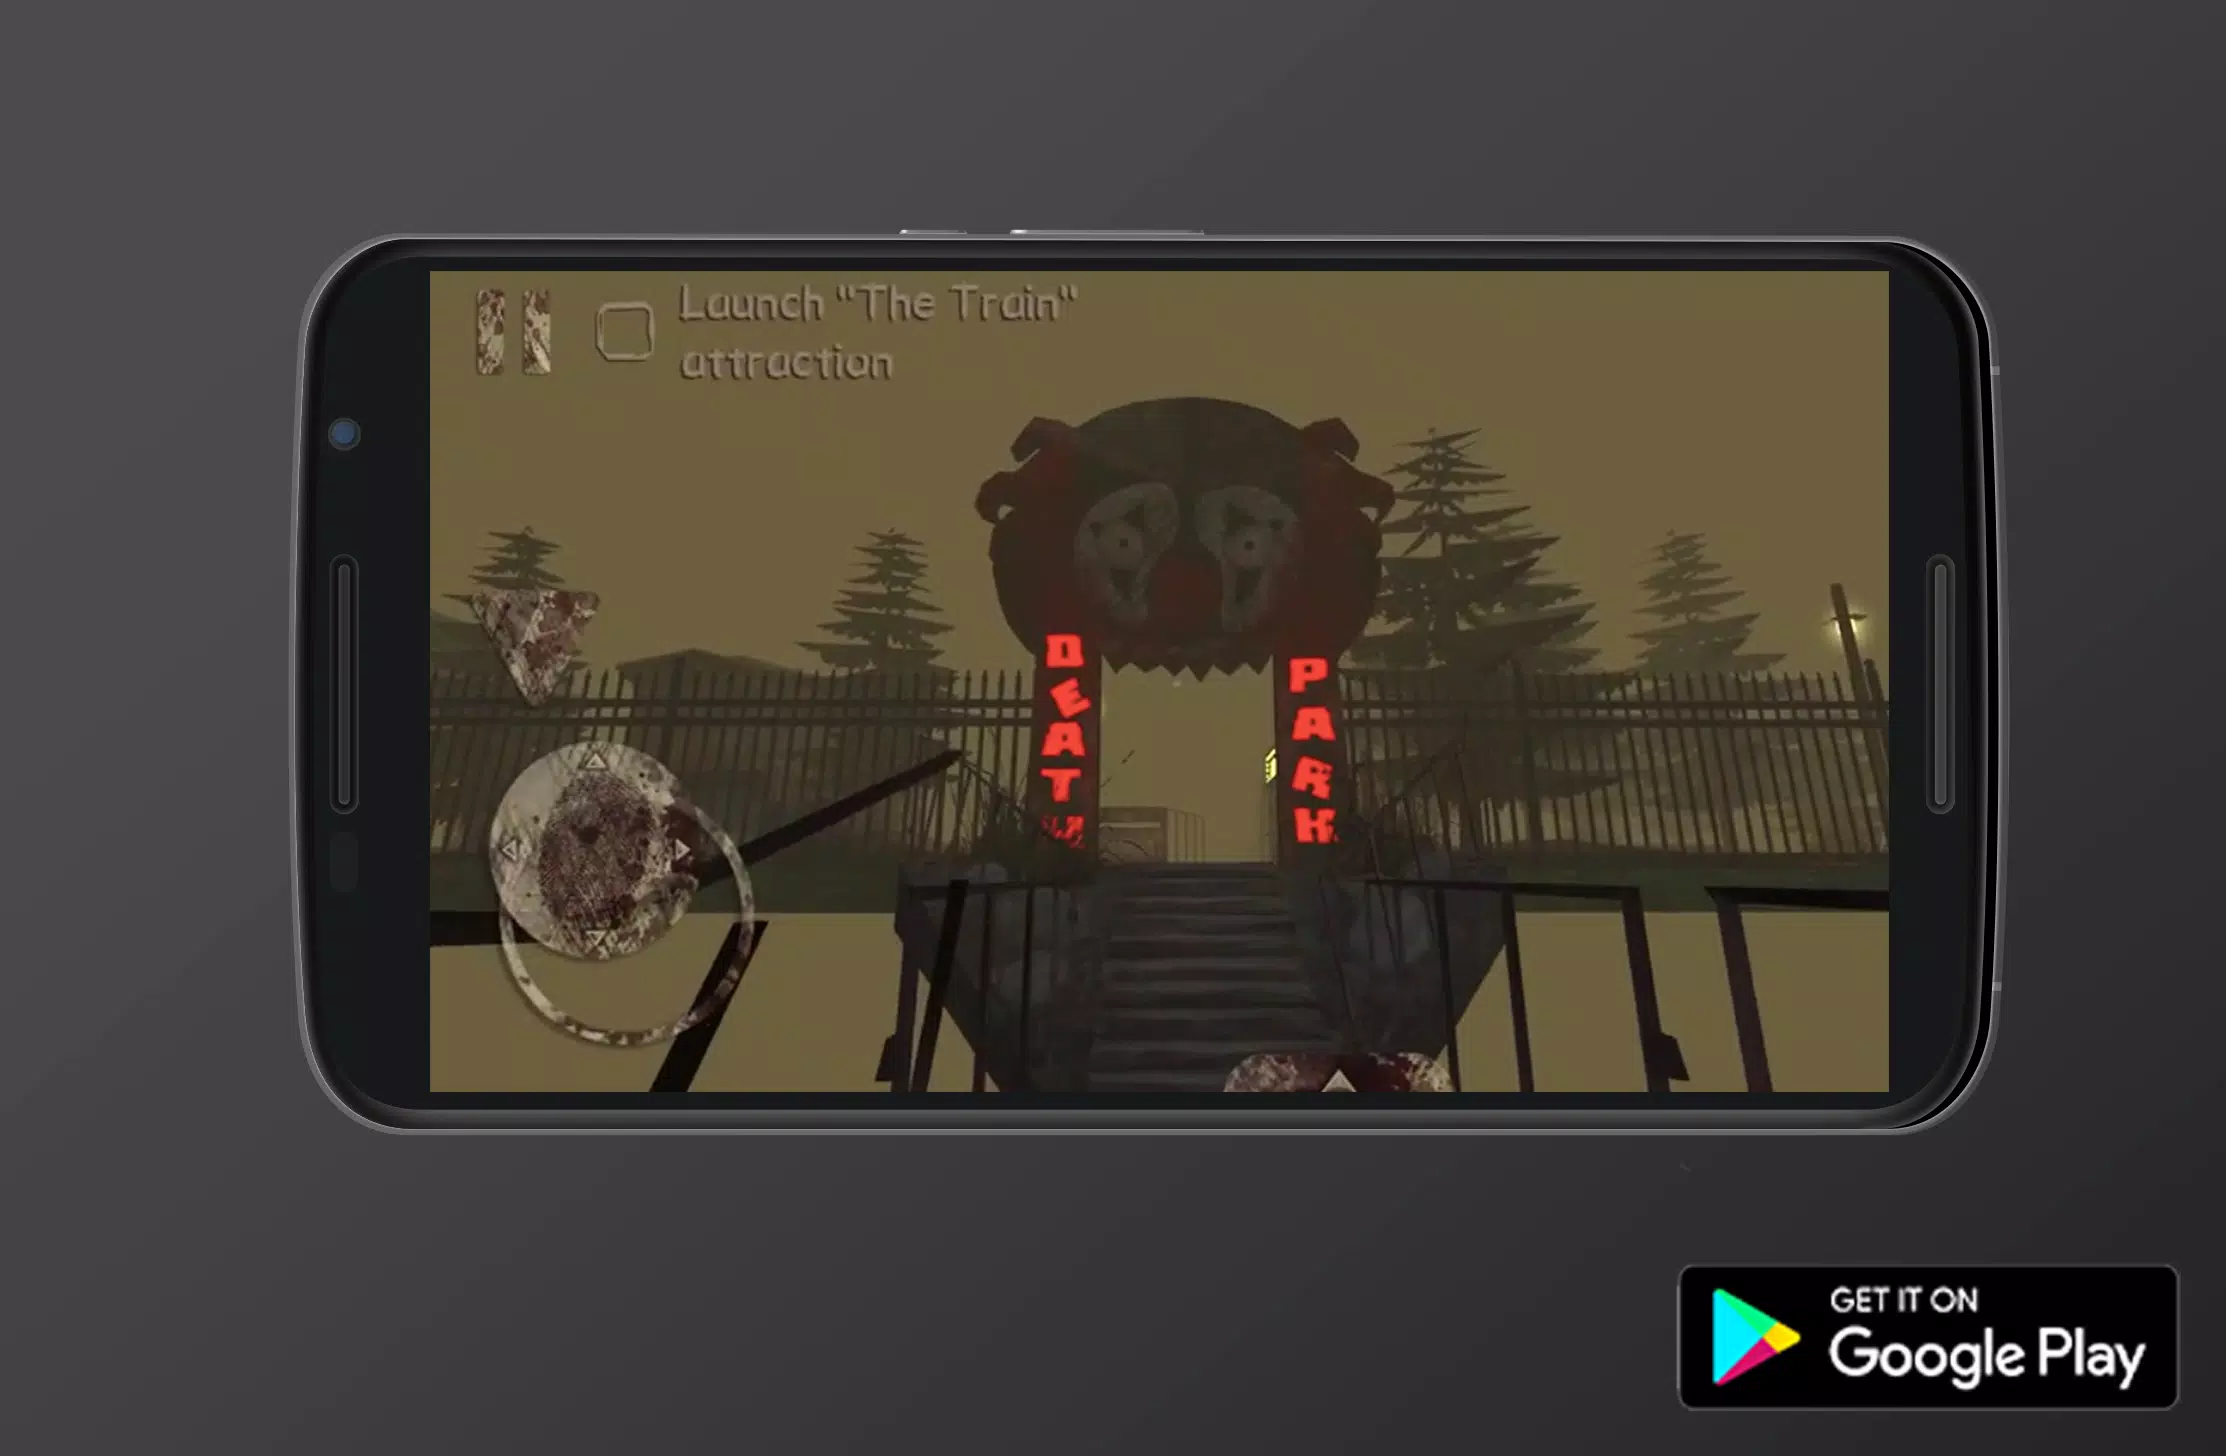 Death Park: Scary Clown Horror - Apps on Google Play